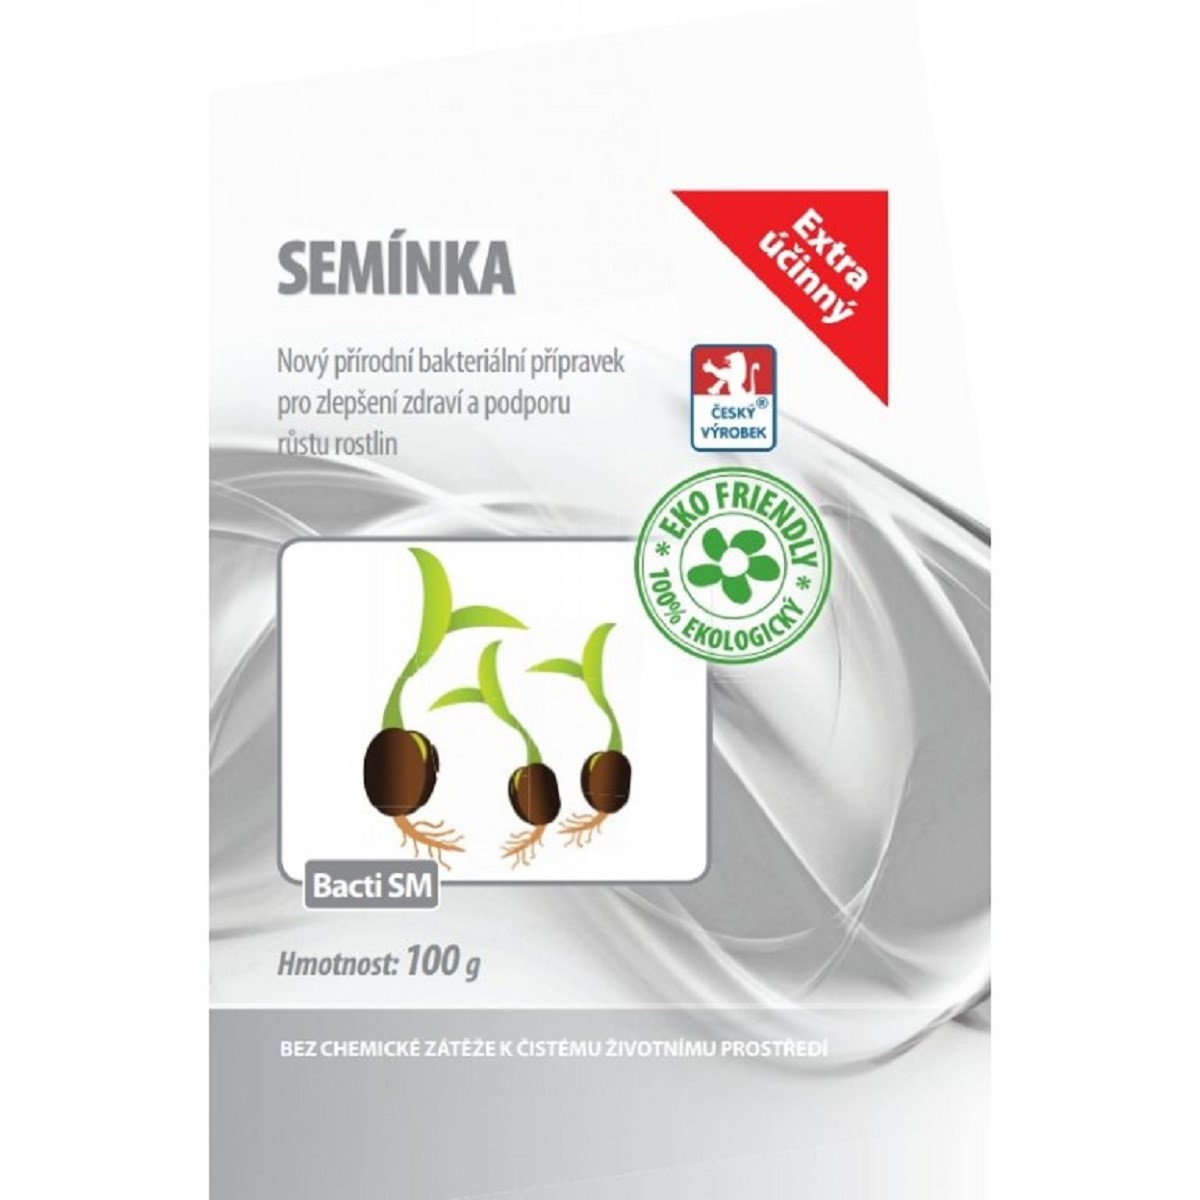 Bacti SM - Stimulátor zdraví rostlin pro semínka - prodej stimulátorů - 100 g